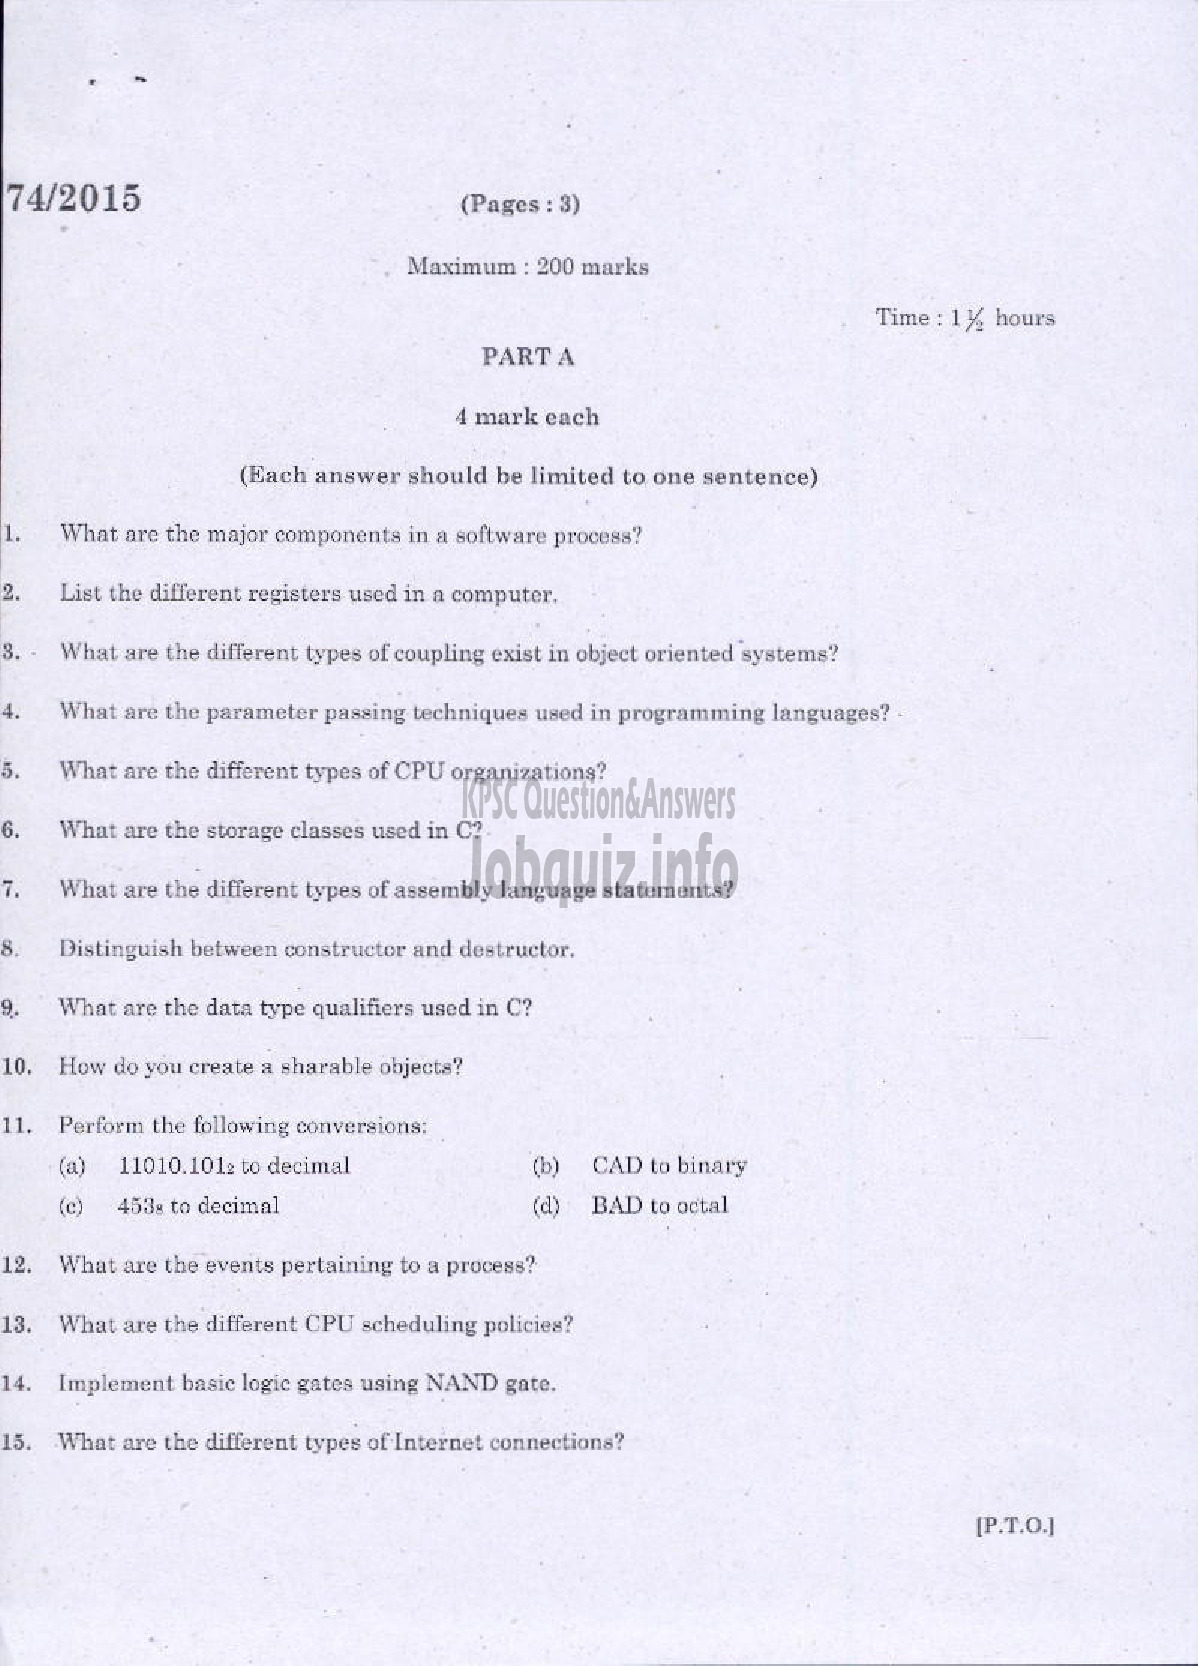 Kerala PSC Question Paper - COMPUTER APPLICATION-1